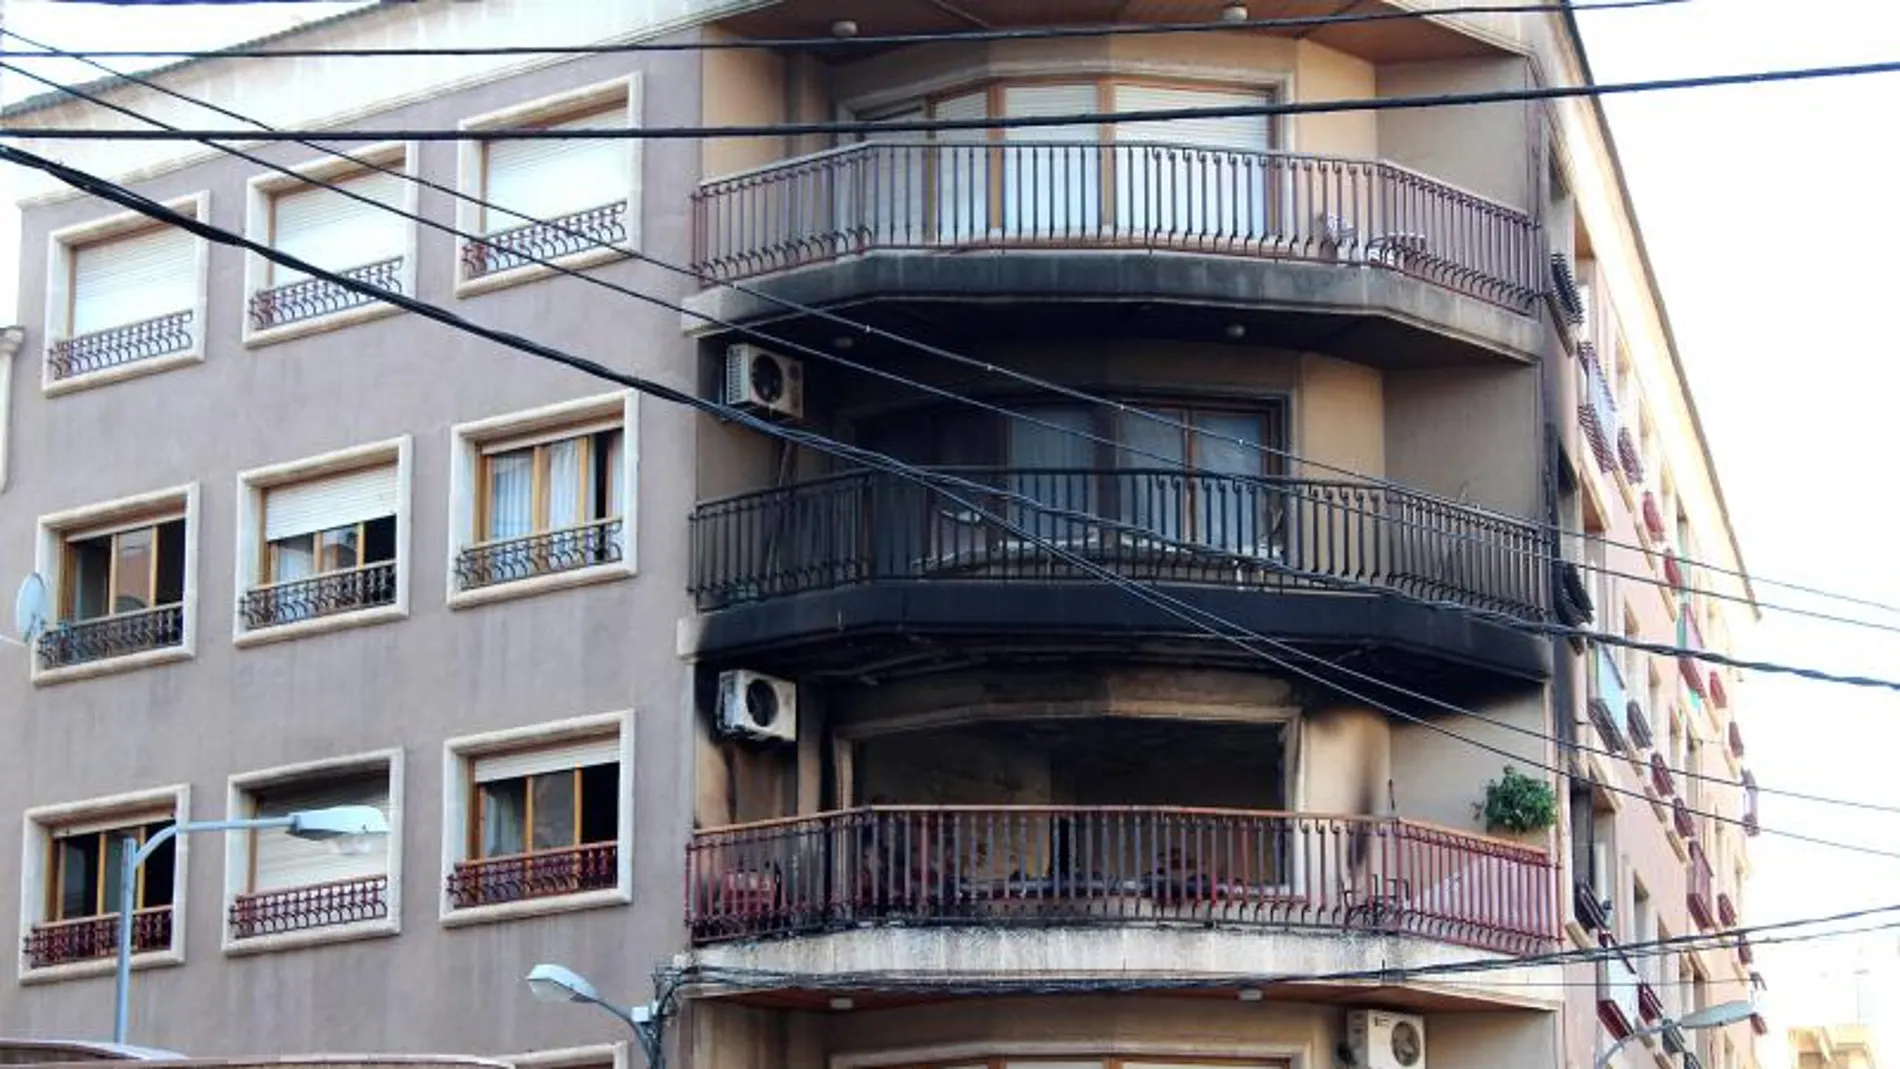 Vista de la vivienda en la que se ha registrado el incendio